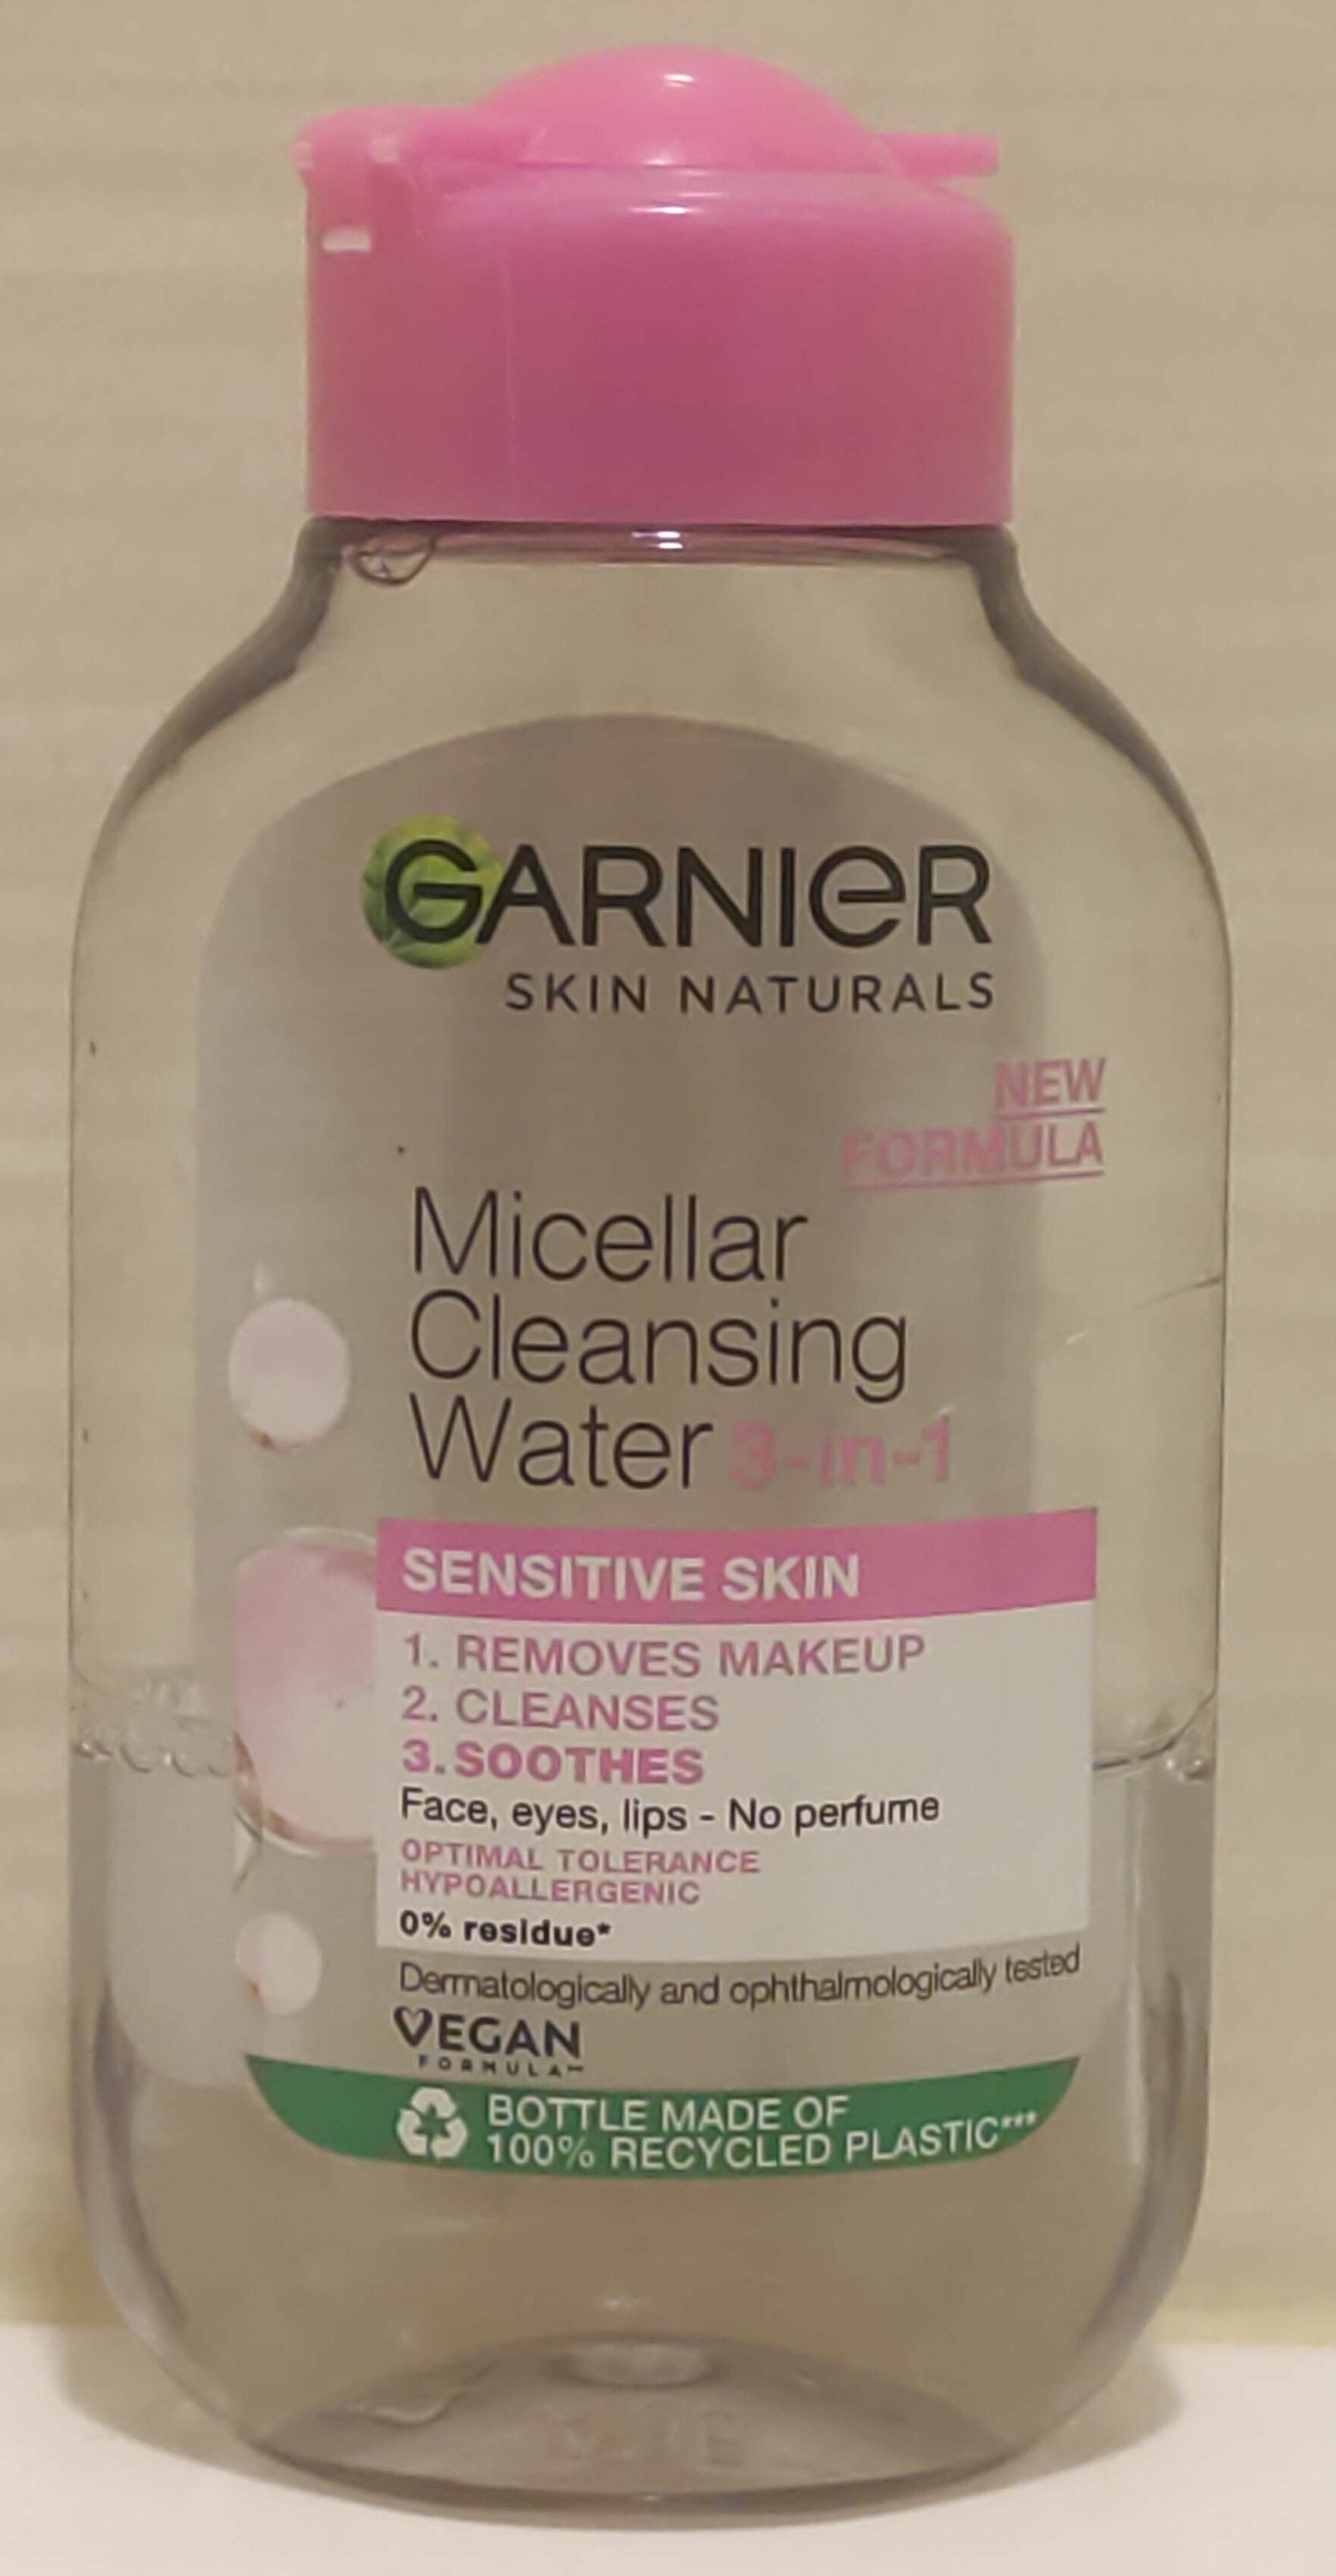 Micellar Cleansing Water 3-in-1 - Product - en